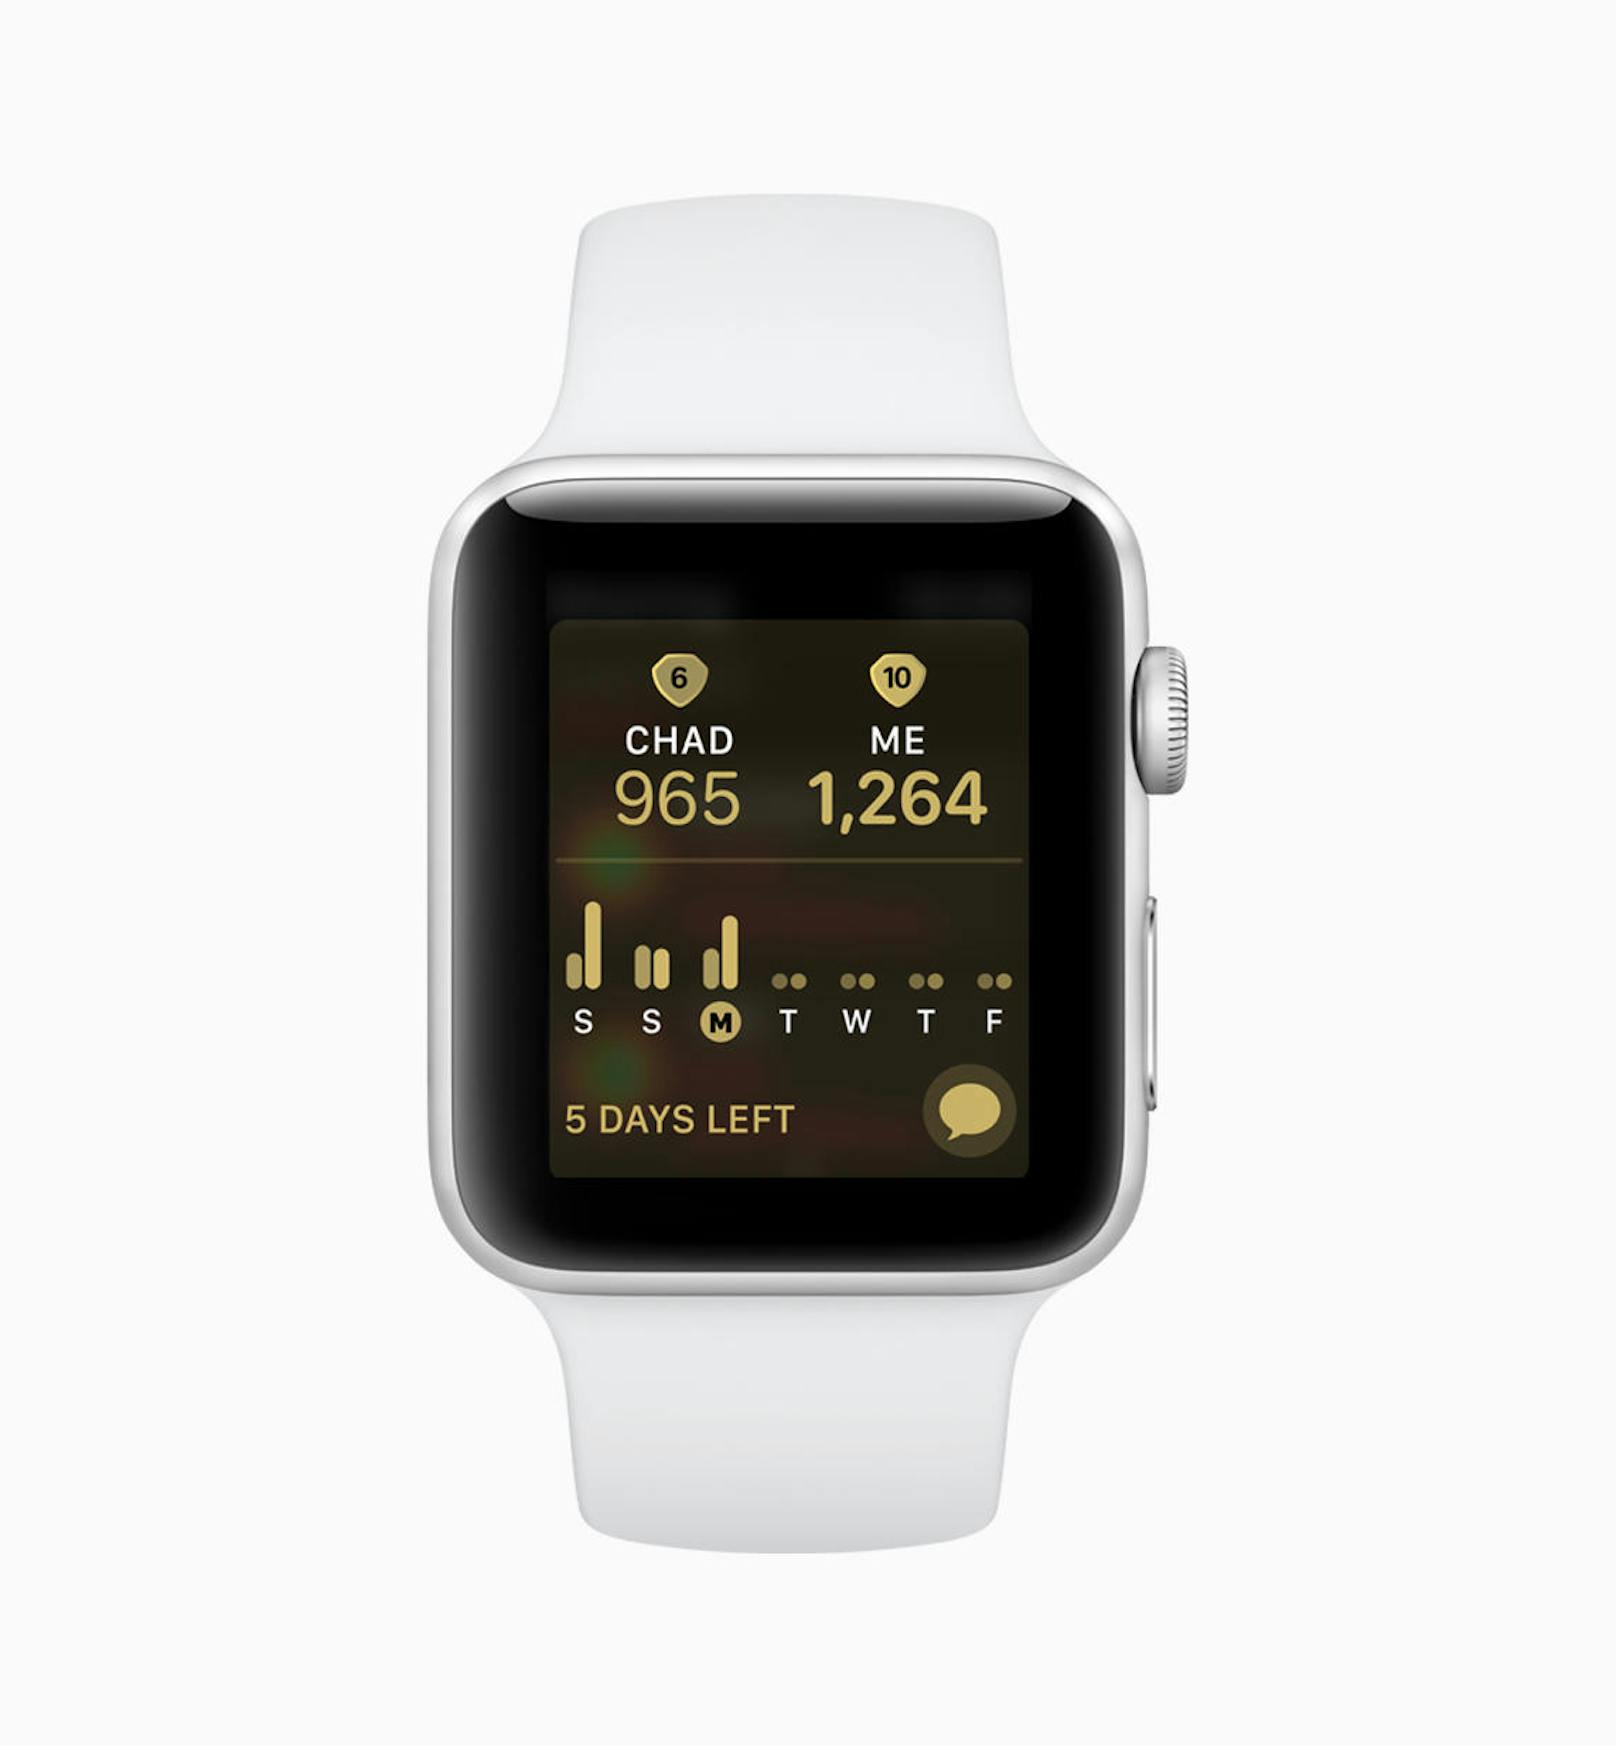 Auch für die Apple Watch gibt es ein Update. So kann man sich bald mit Freunden beim Workout vergleichen und eine "Competiton" starten.